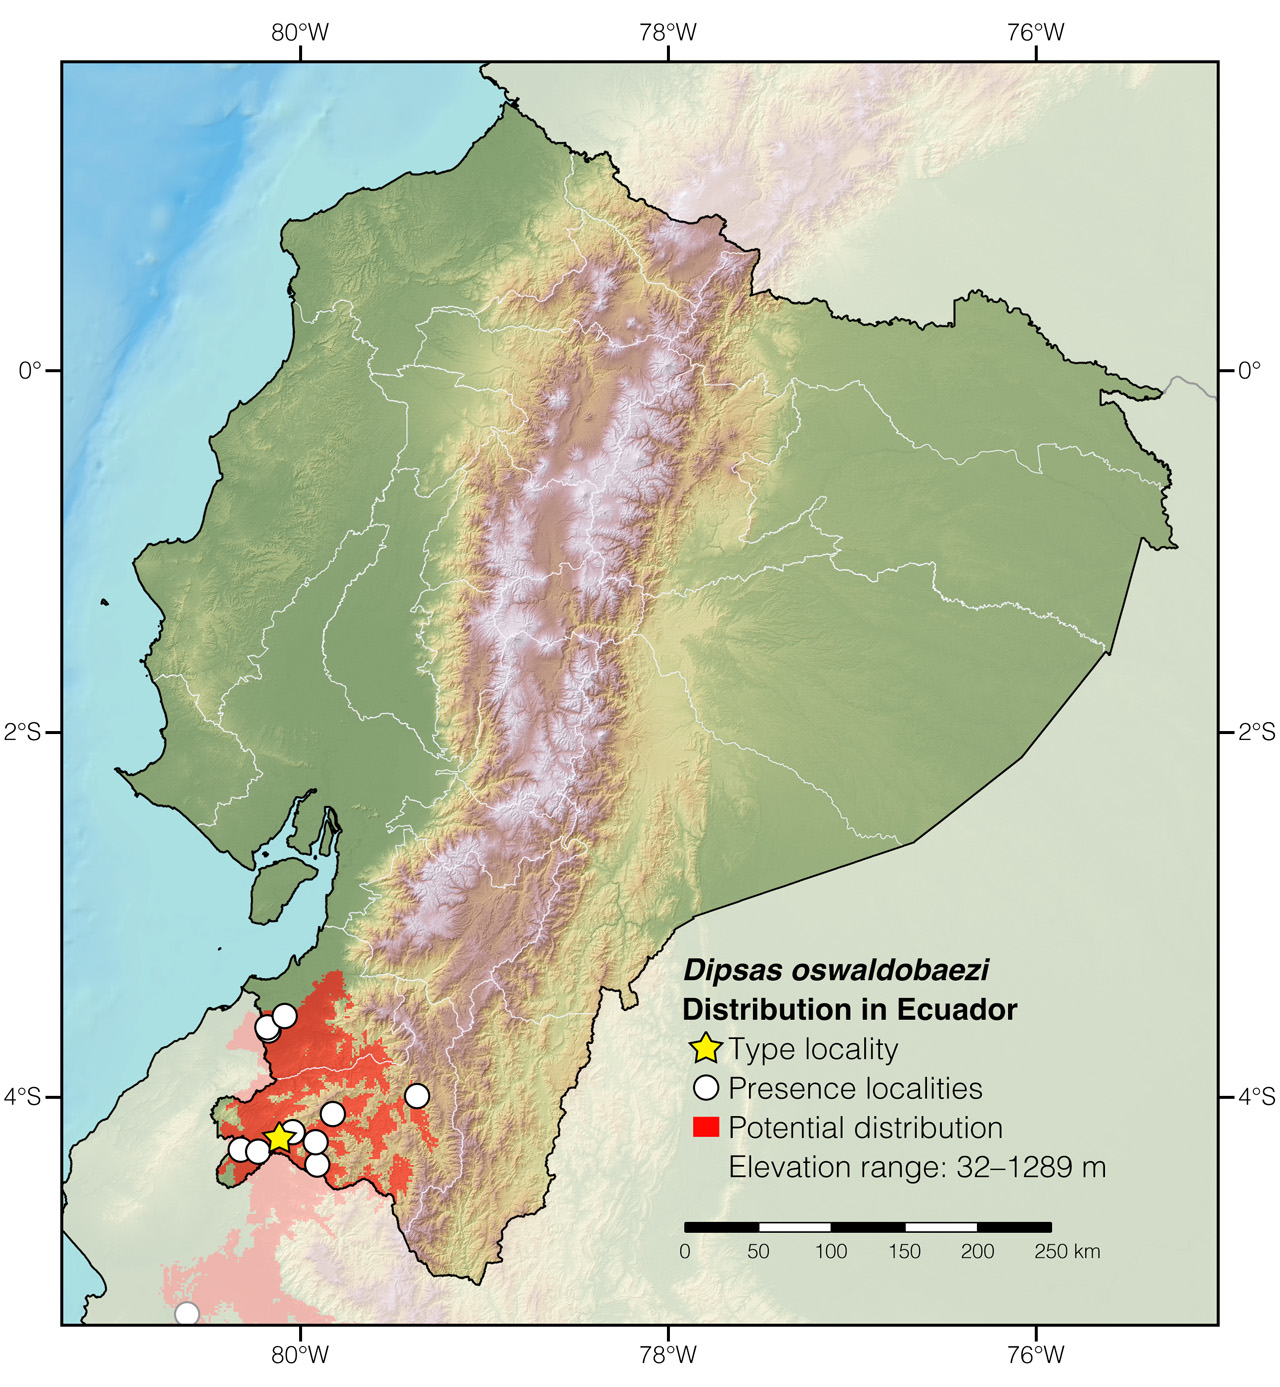 Distribution of Dipsas oswaldobaezi in Ecuador